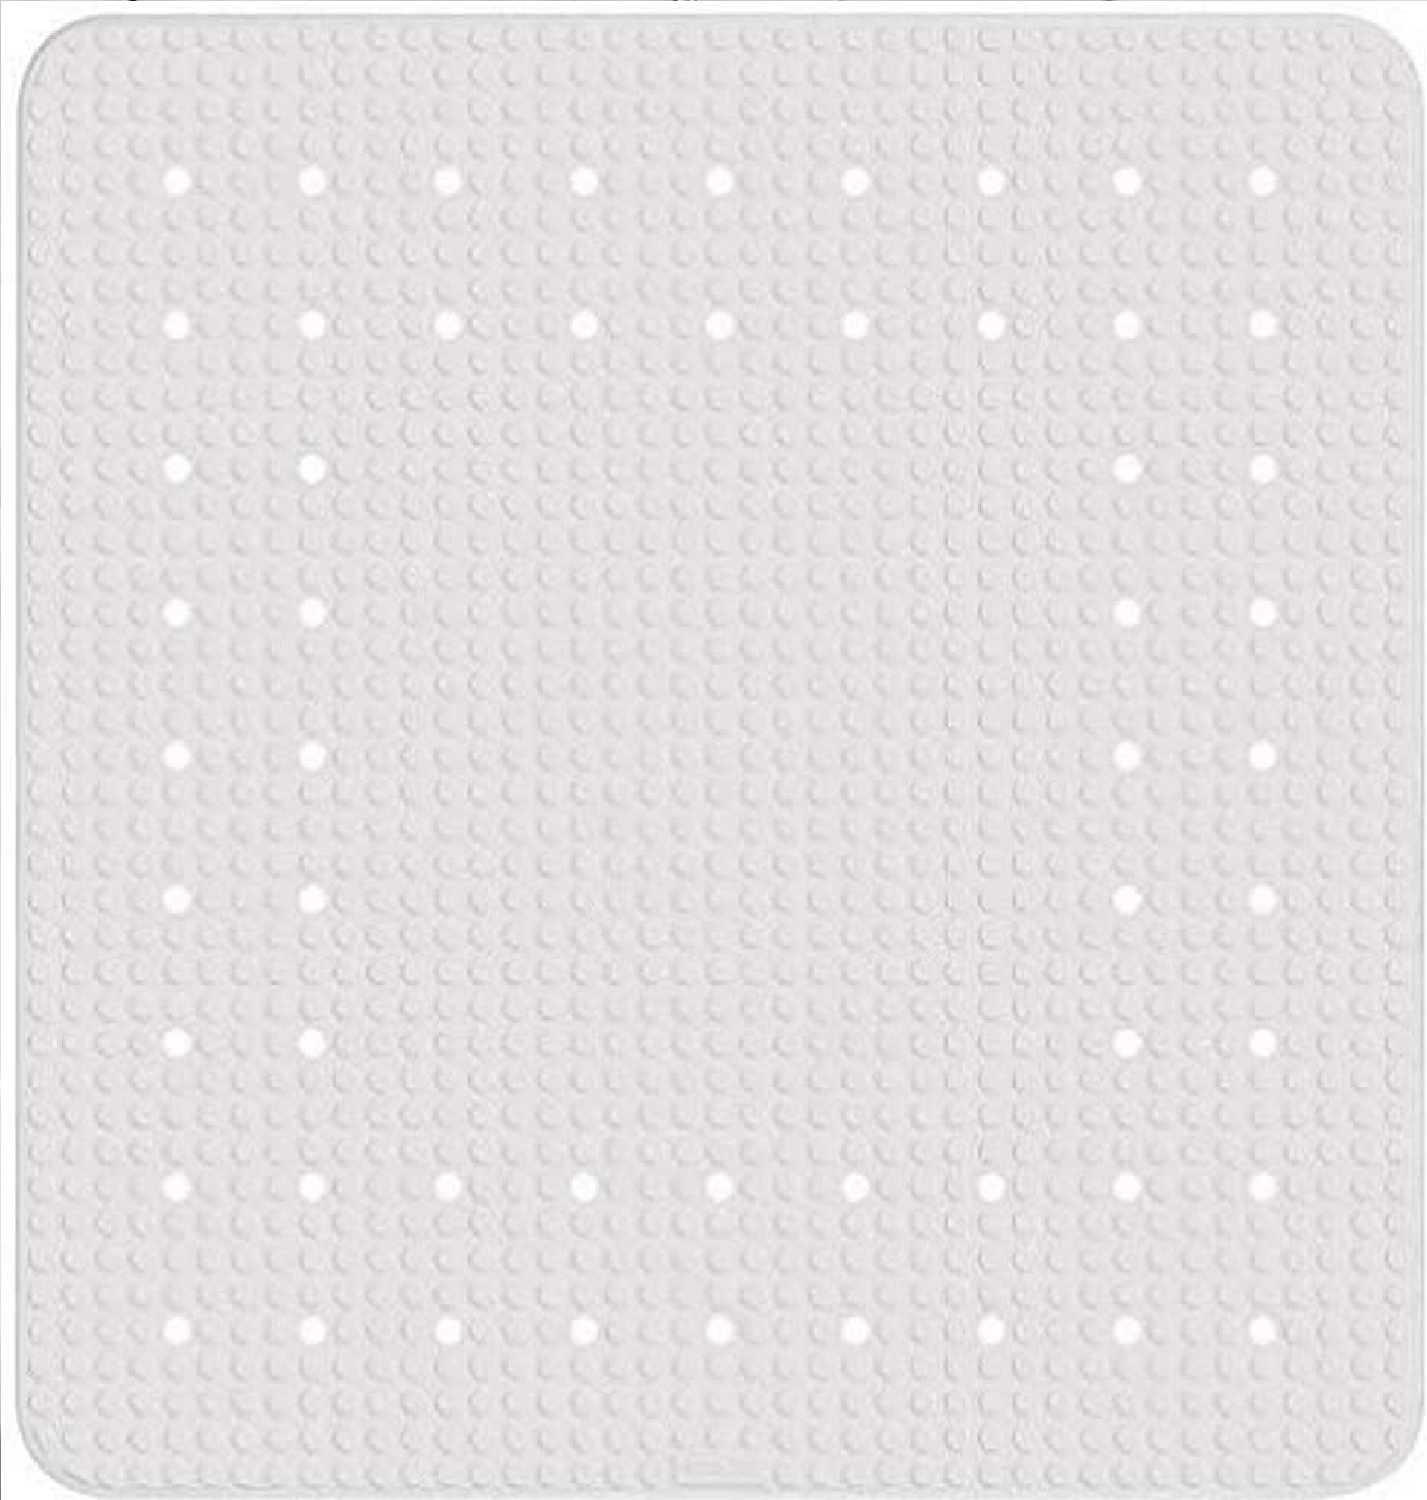 Duscheinlage Mirasol, Antirutsch-Duschmatte mit Saugnäpfen, Matte mit dekorativem Loch-Muster für alle gängigen Duschtassen, aus umweltfreundlichem, hochwertigem Kautschuk, 54 x 54 cm, Weiß